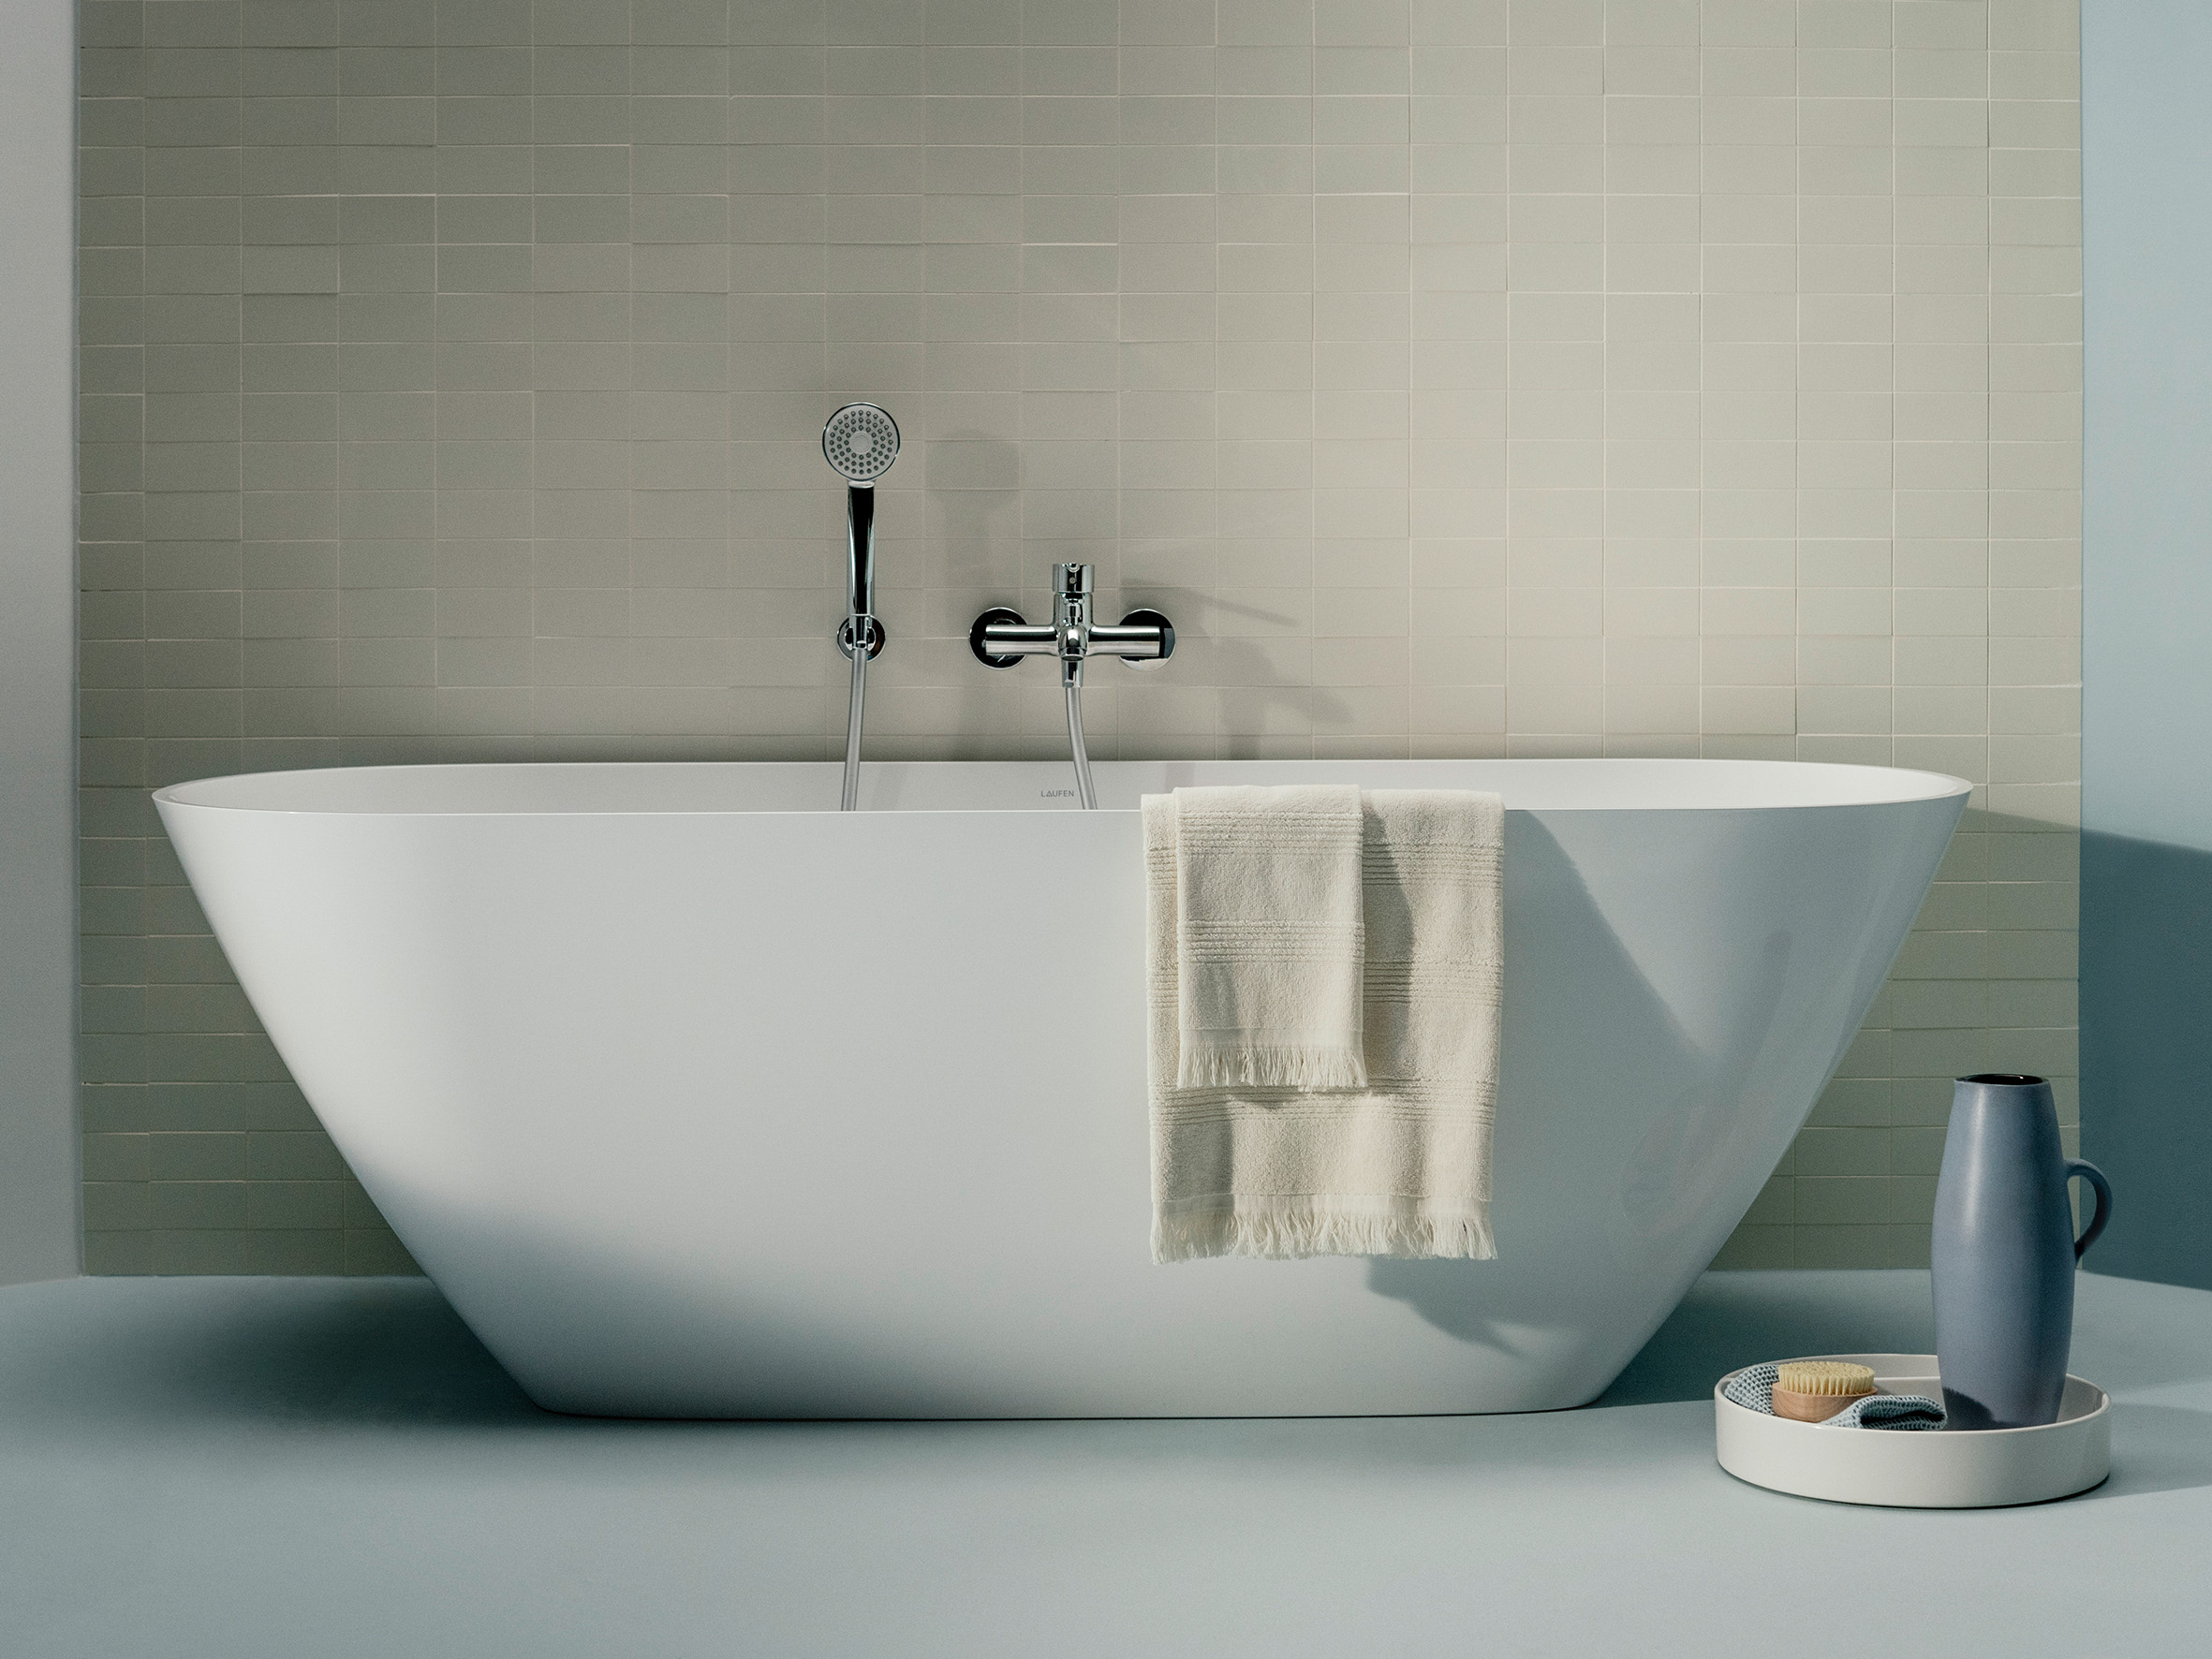 Freistehende Badewanne vor gefliester beige-farbener Wand, Badezimmer Dekoration und Handtuch